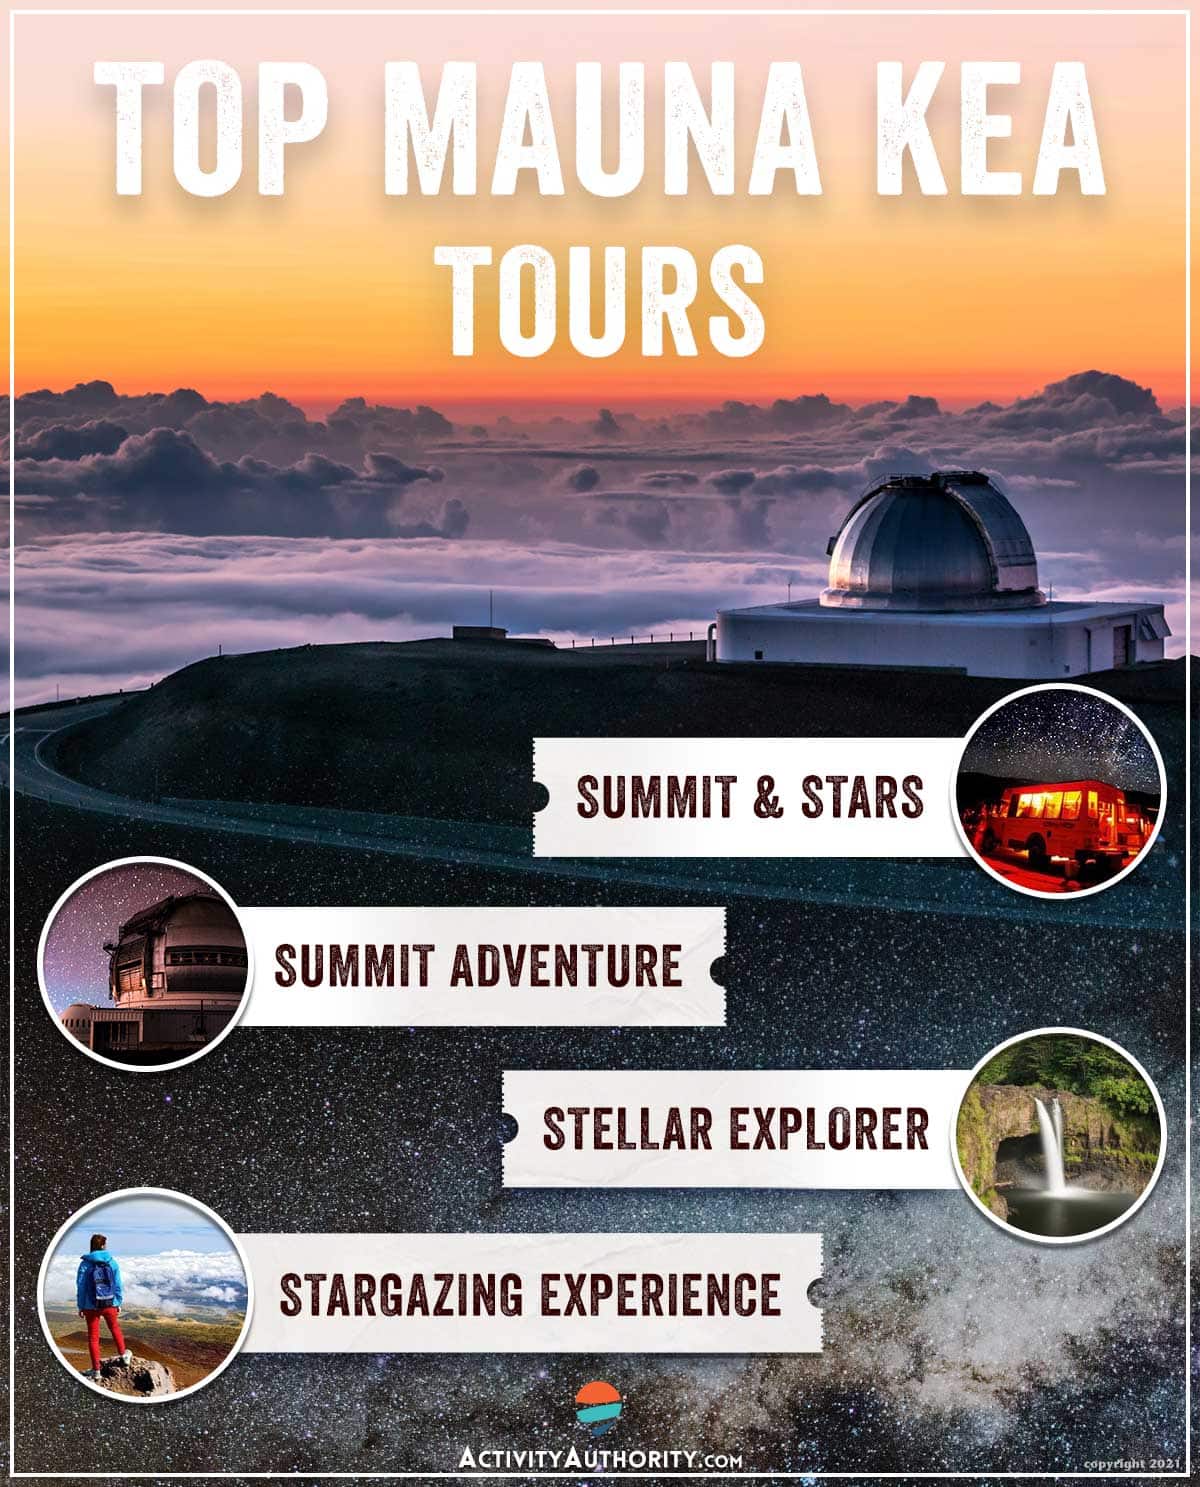 Top Mauna Kea Tours